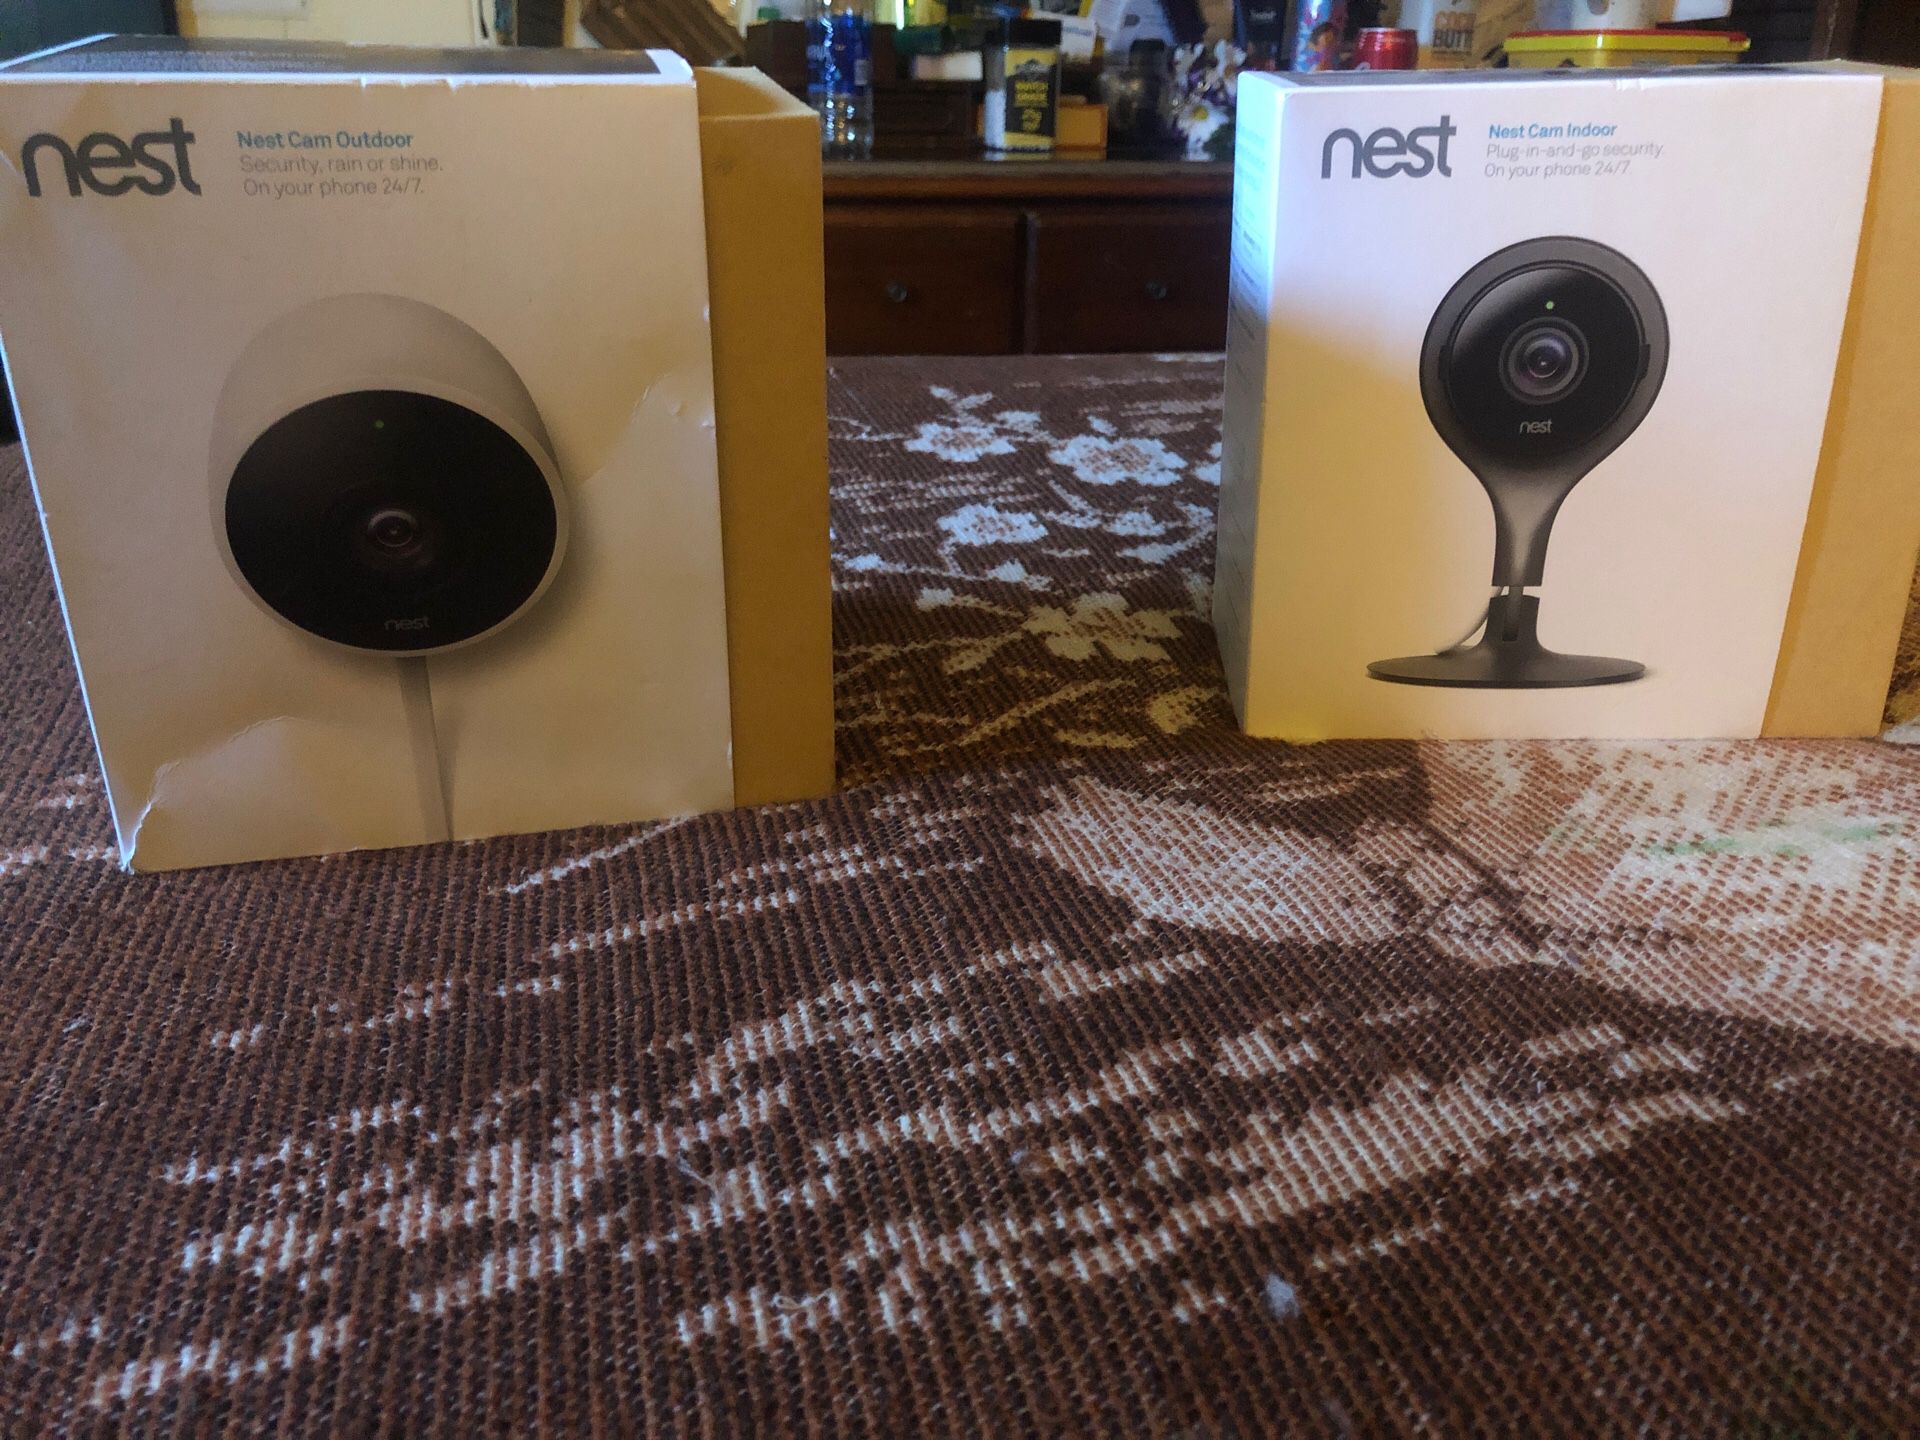 Nest security cameras